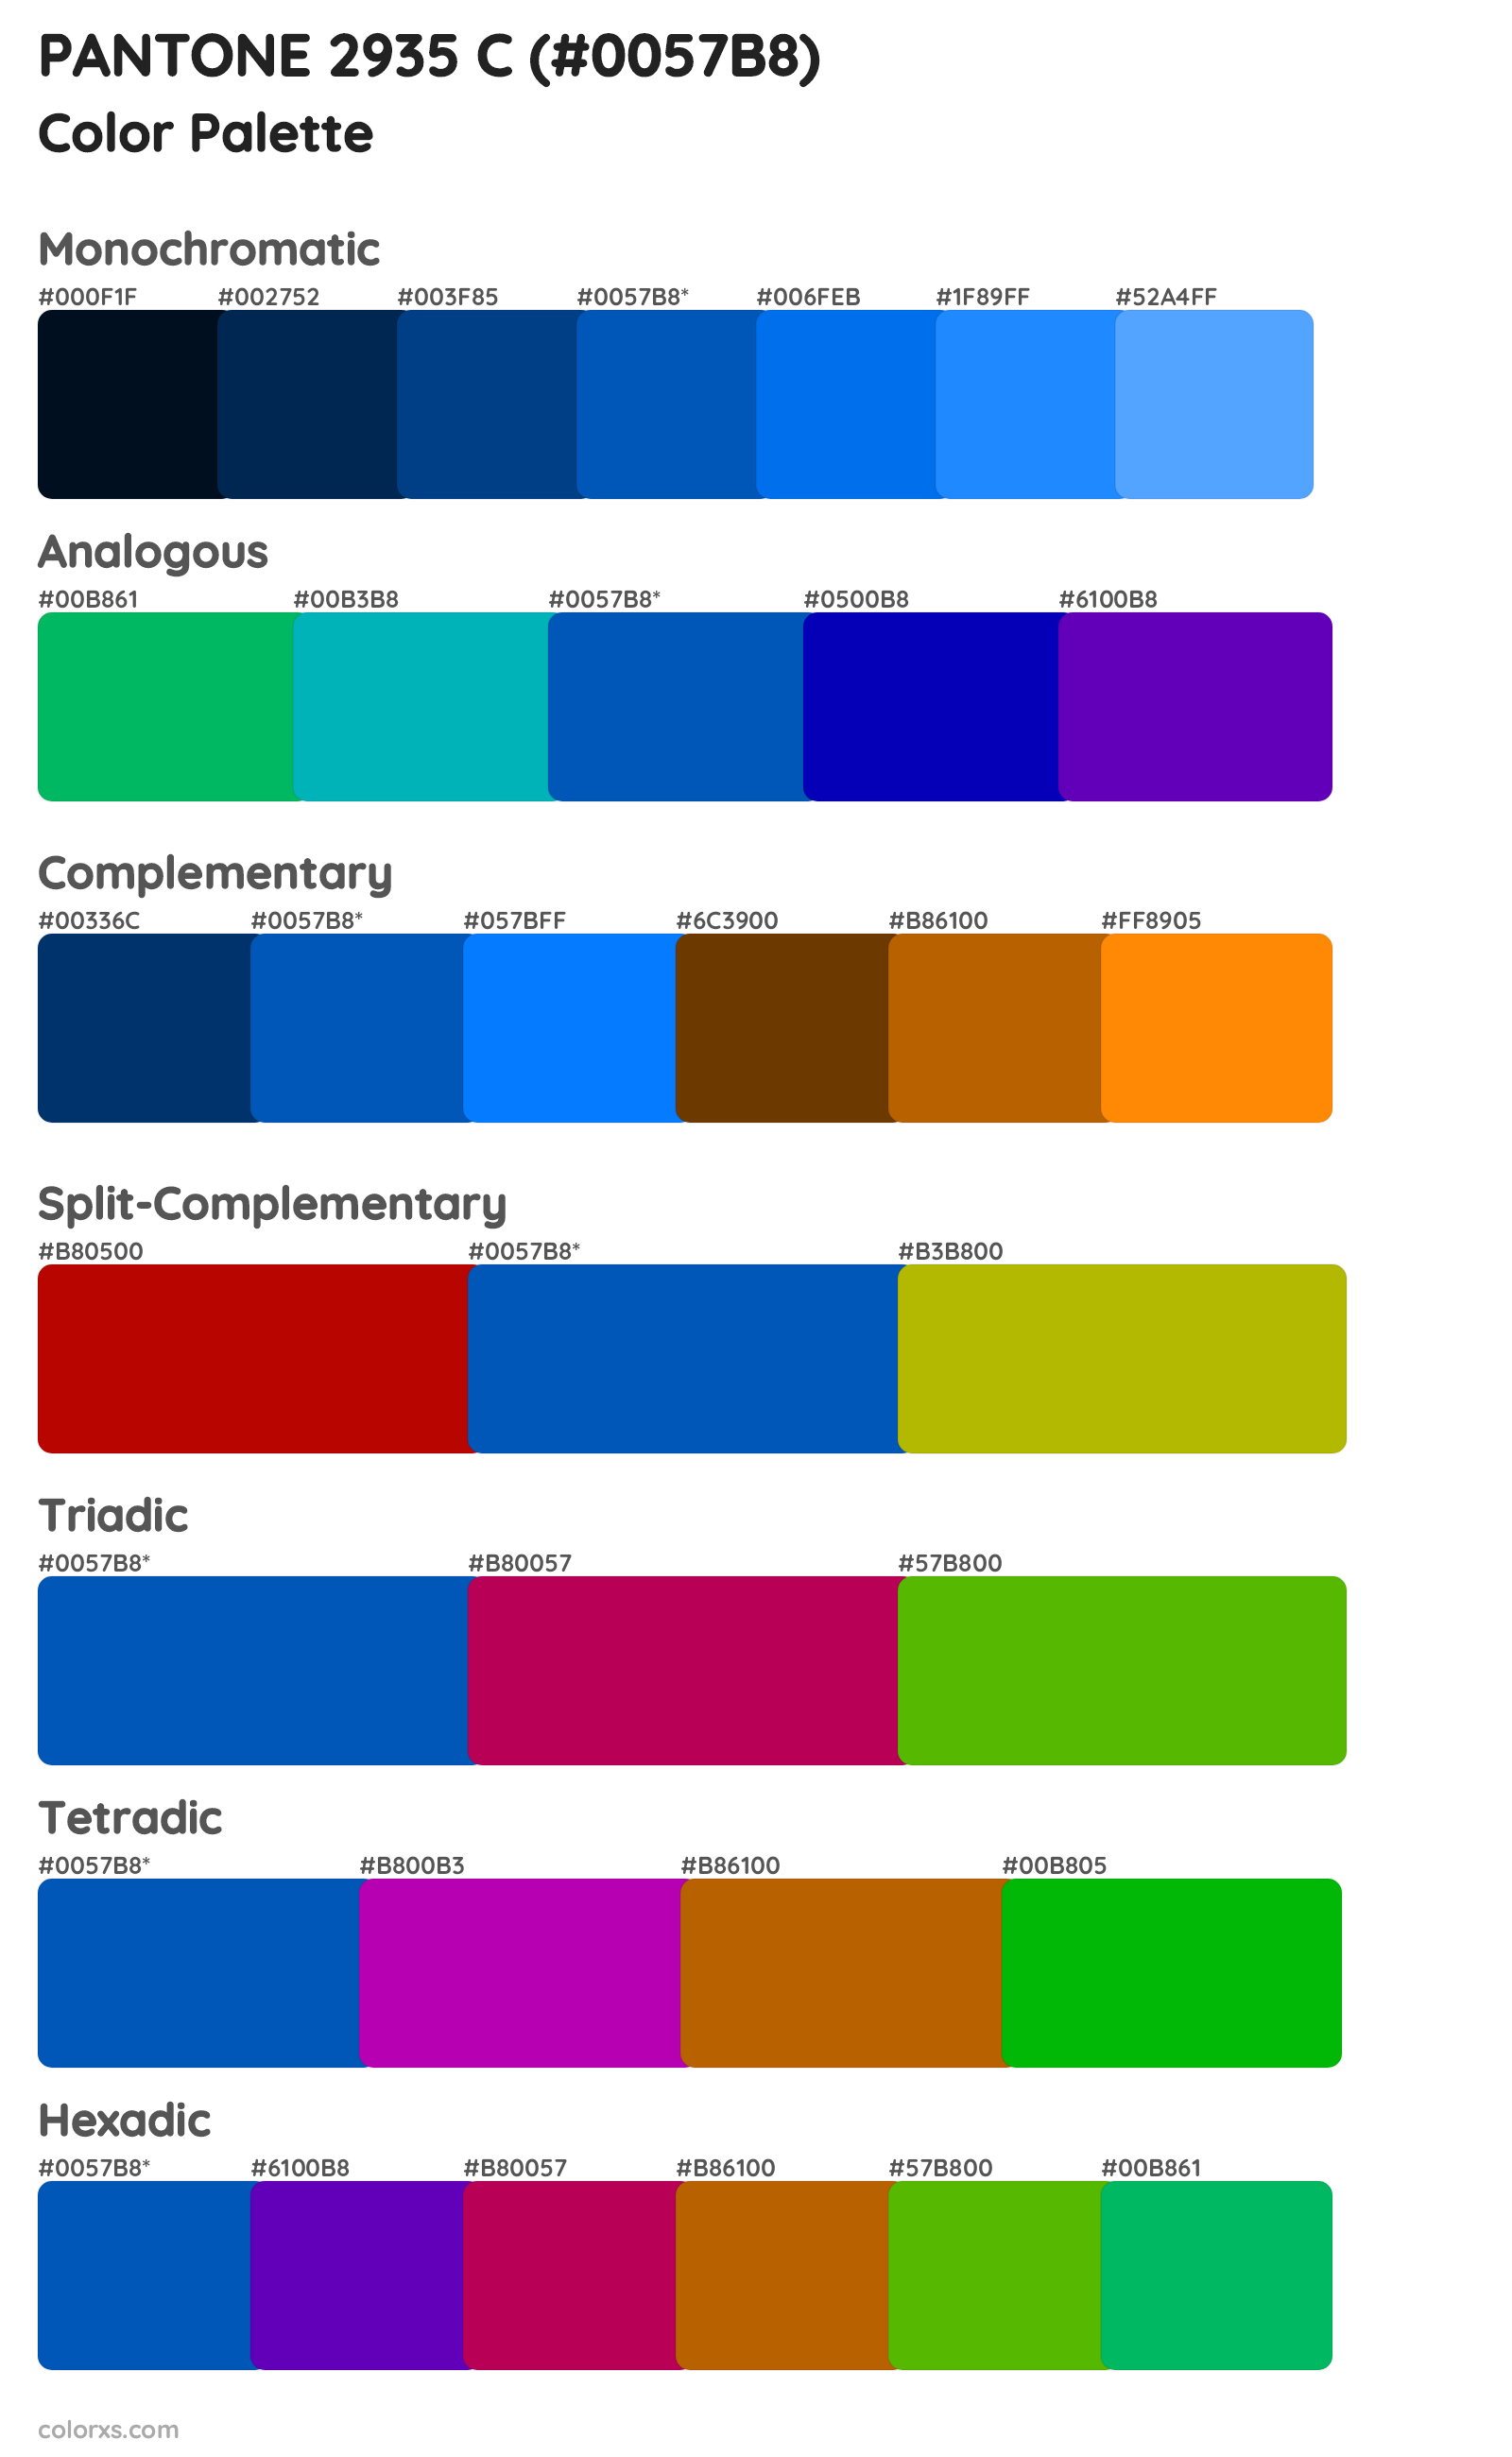 PANTONE 2935 C Color Scheme Palettes